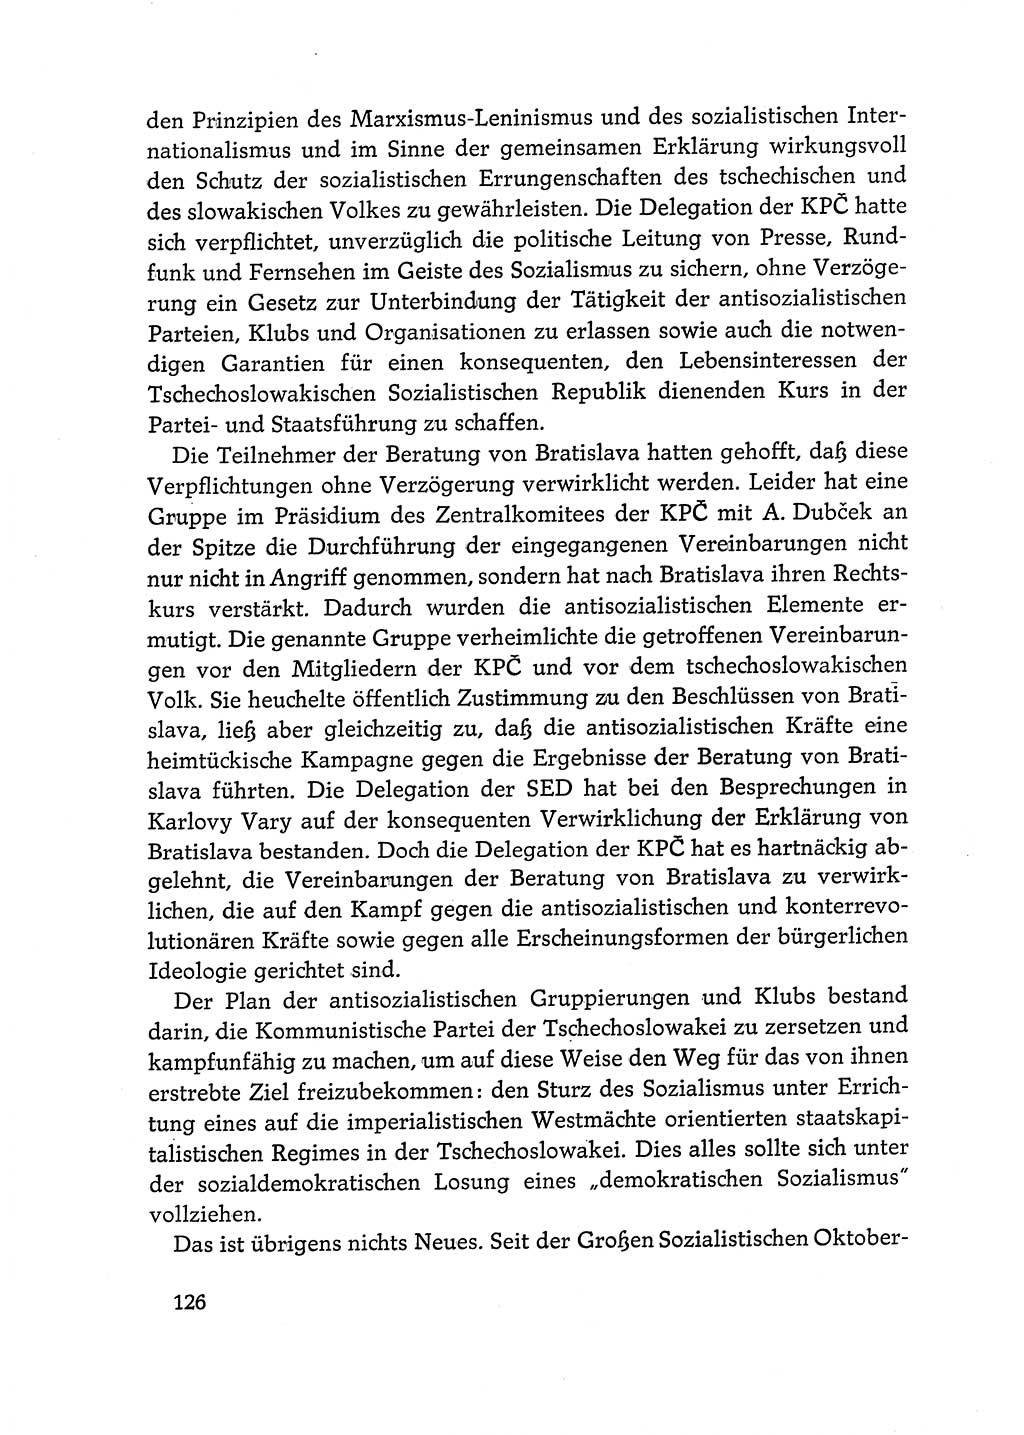 Dokumente der Sozialistischen Einheitspartei Deutschlands (SED) [Deutsche Demokratische Republik (DDR)] 1968-1969, Seite 126 (Dok. SED DDR 1968-1969, S. 126)